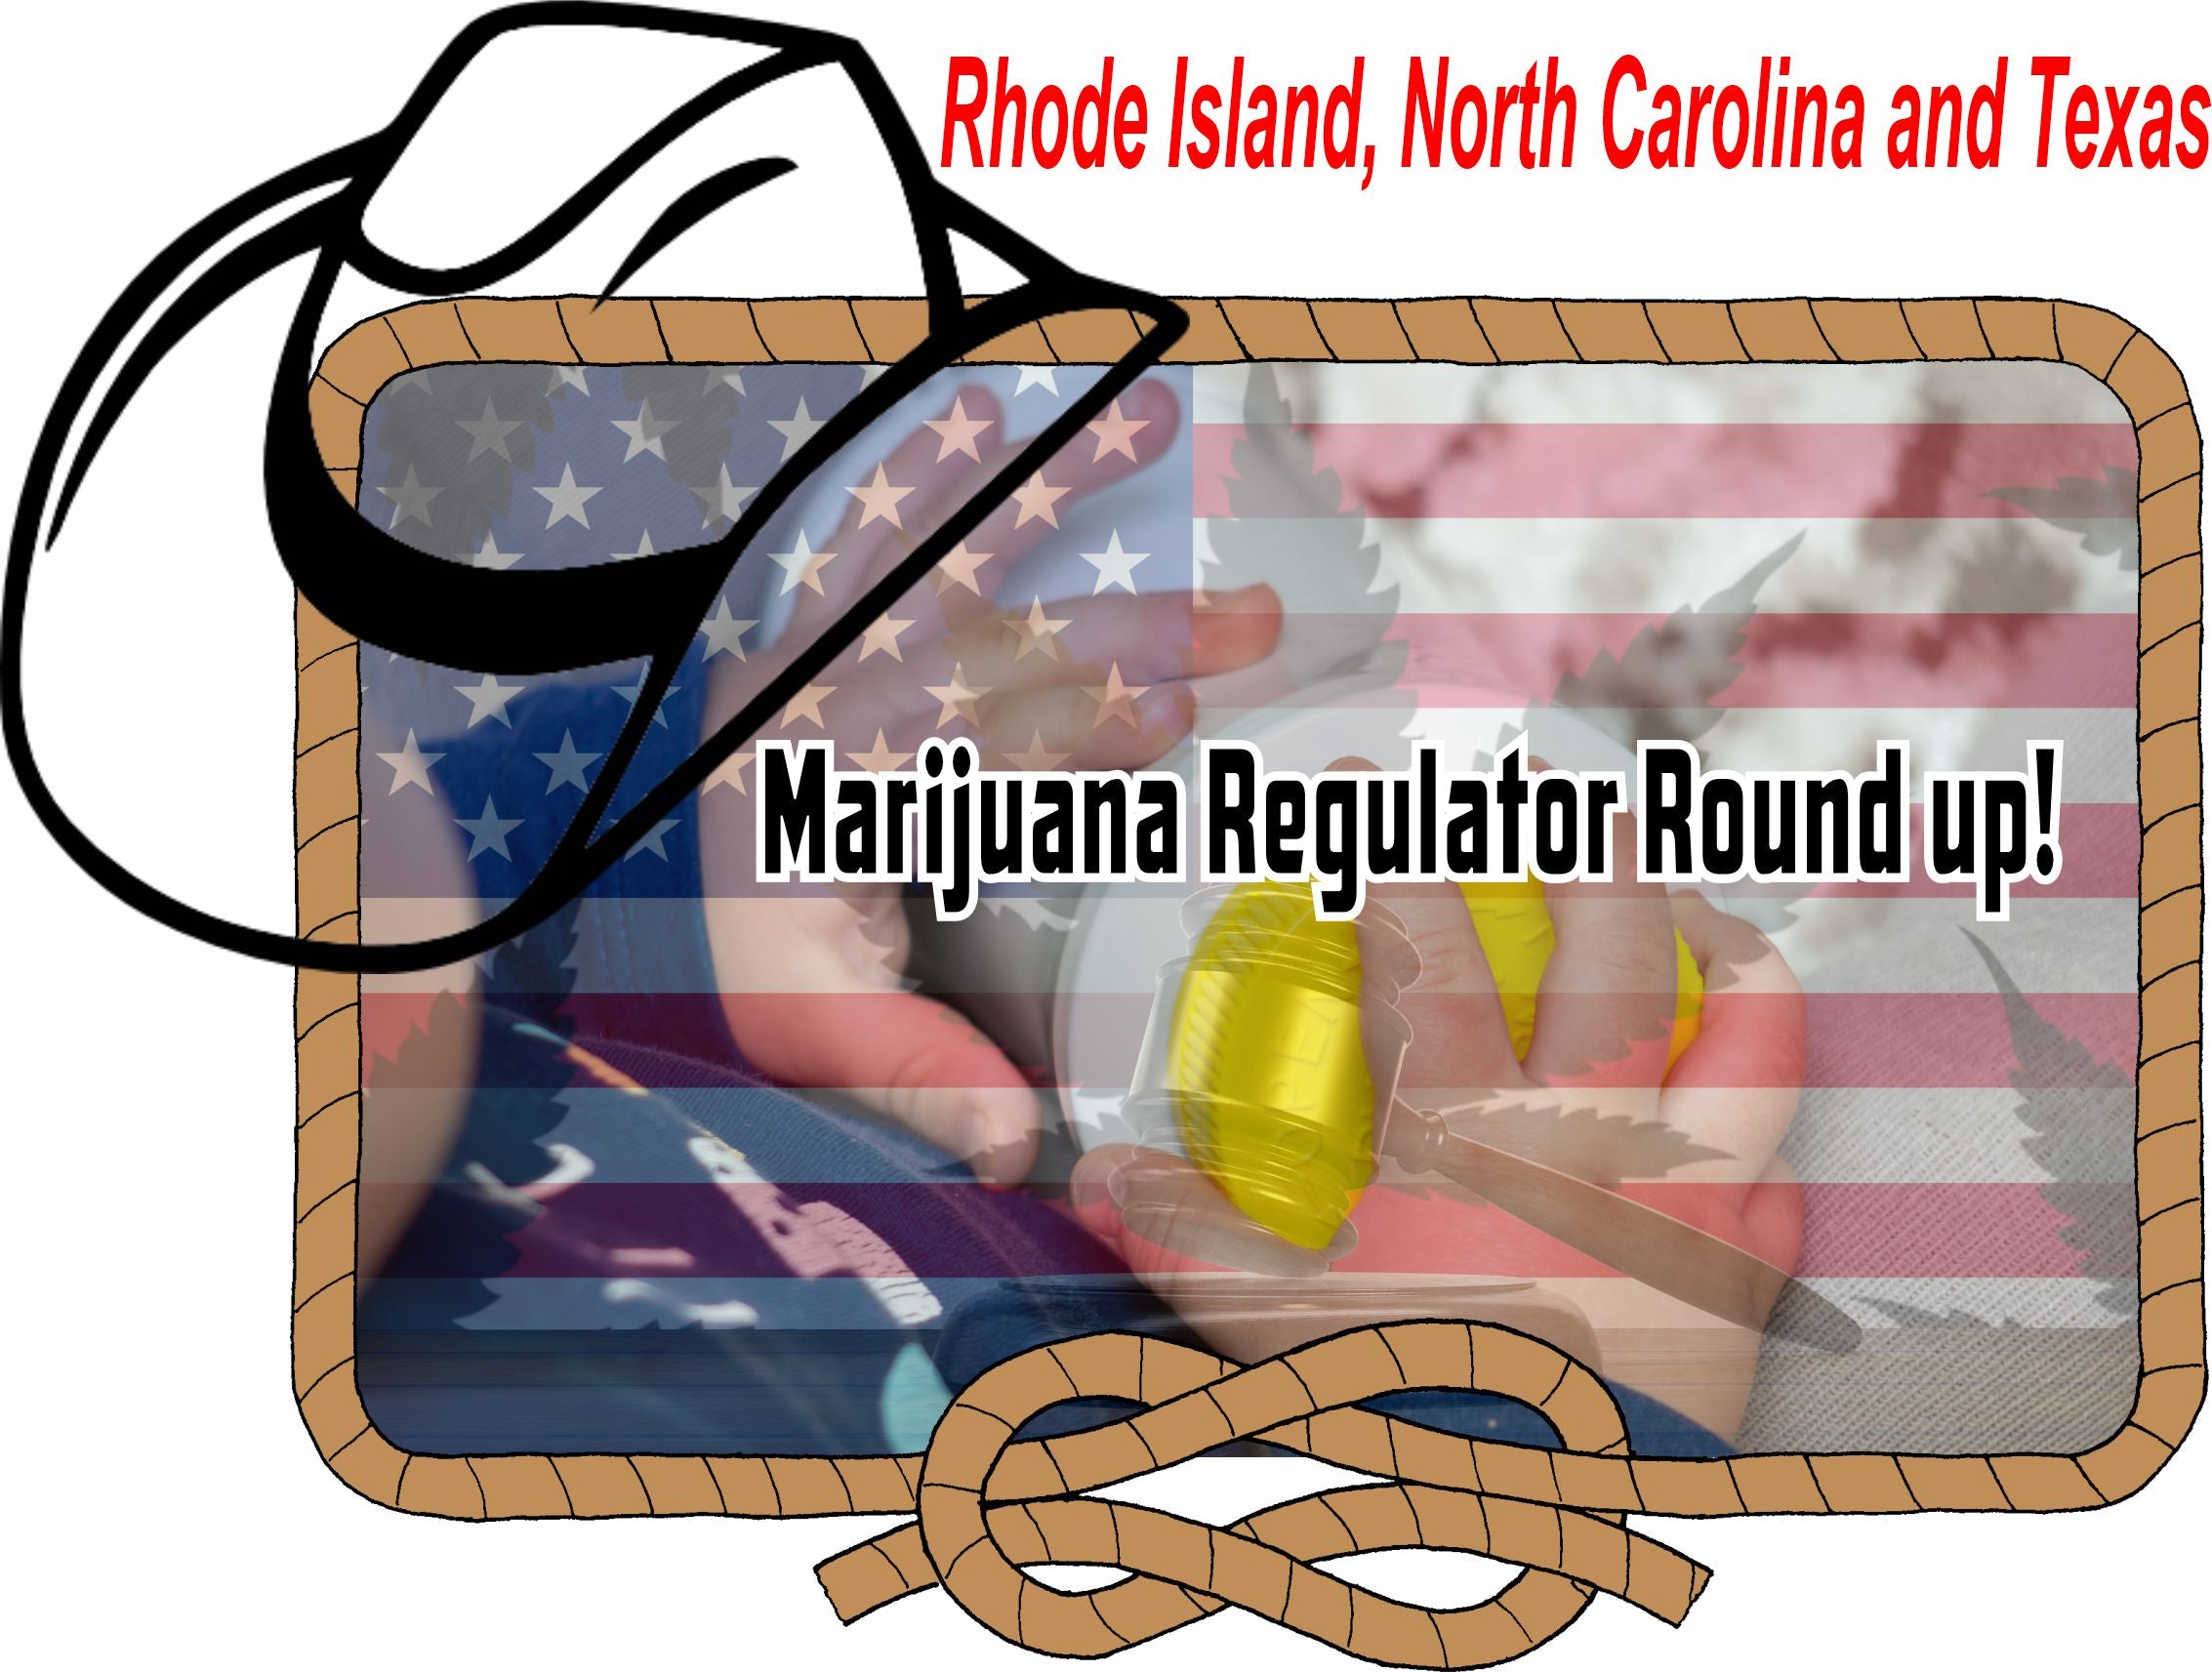 <p> </p> <p>Marijuana Regulatory Roundup: Updates from Rhode Island, North Carolina, and Texas</p>